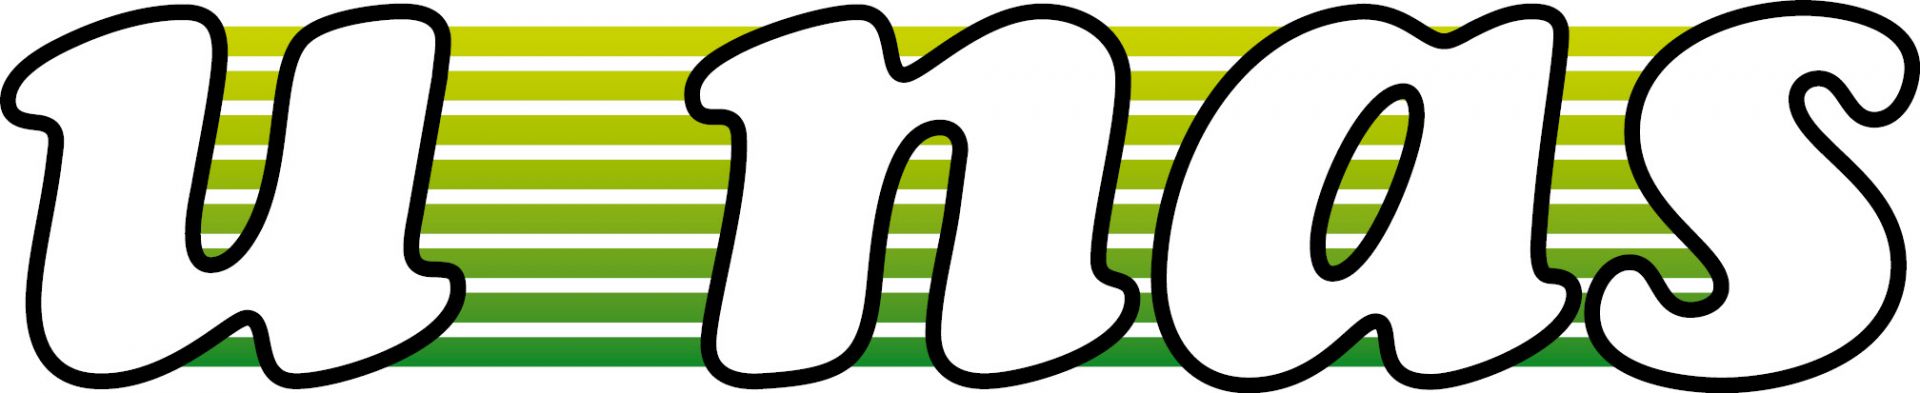 Logo miesięcznika